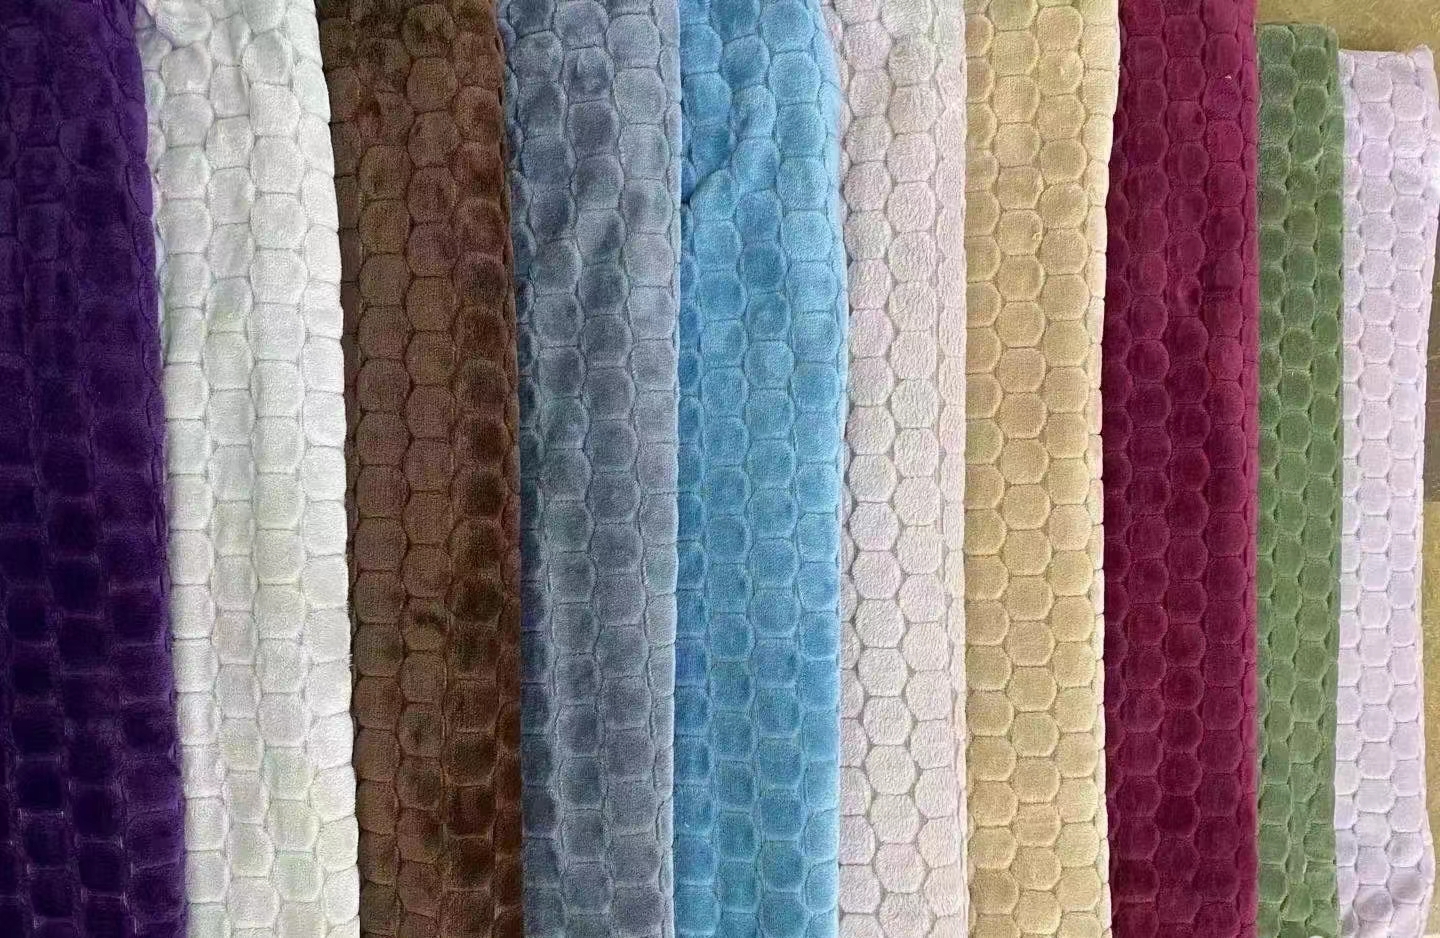 单层裸毯 毛毯 毯子 手感舒适 颜色多样可选7